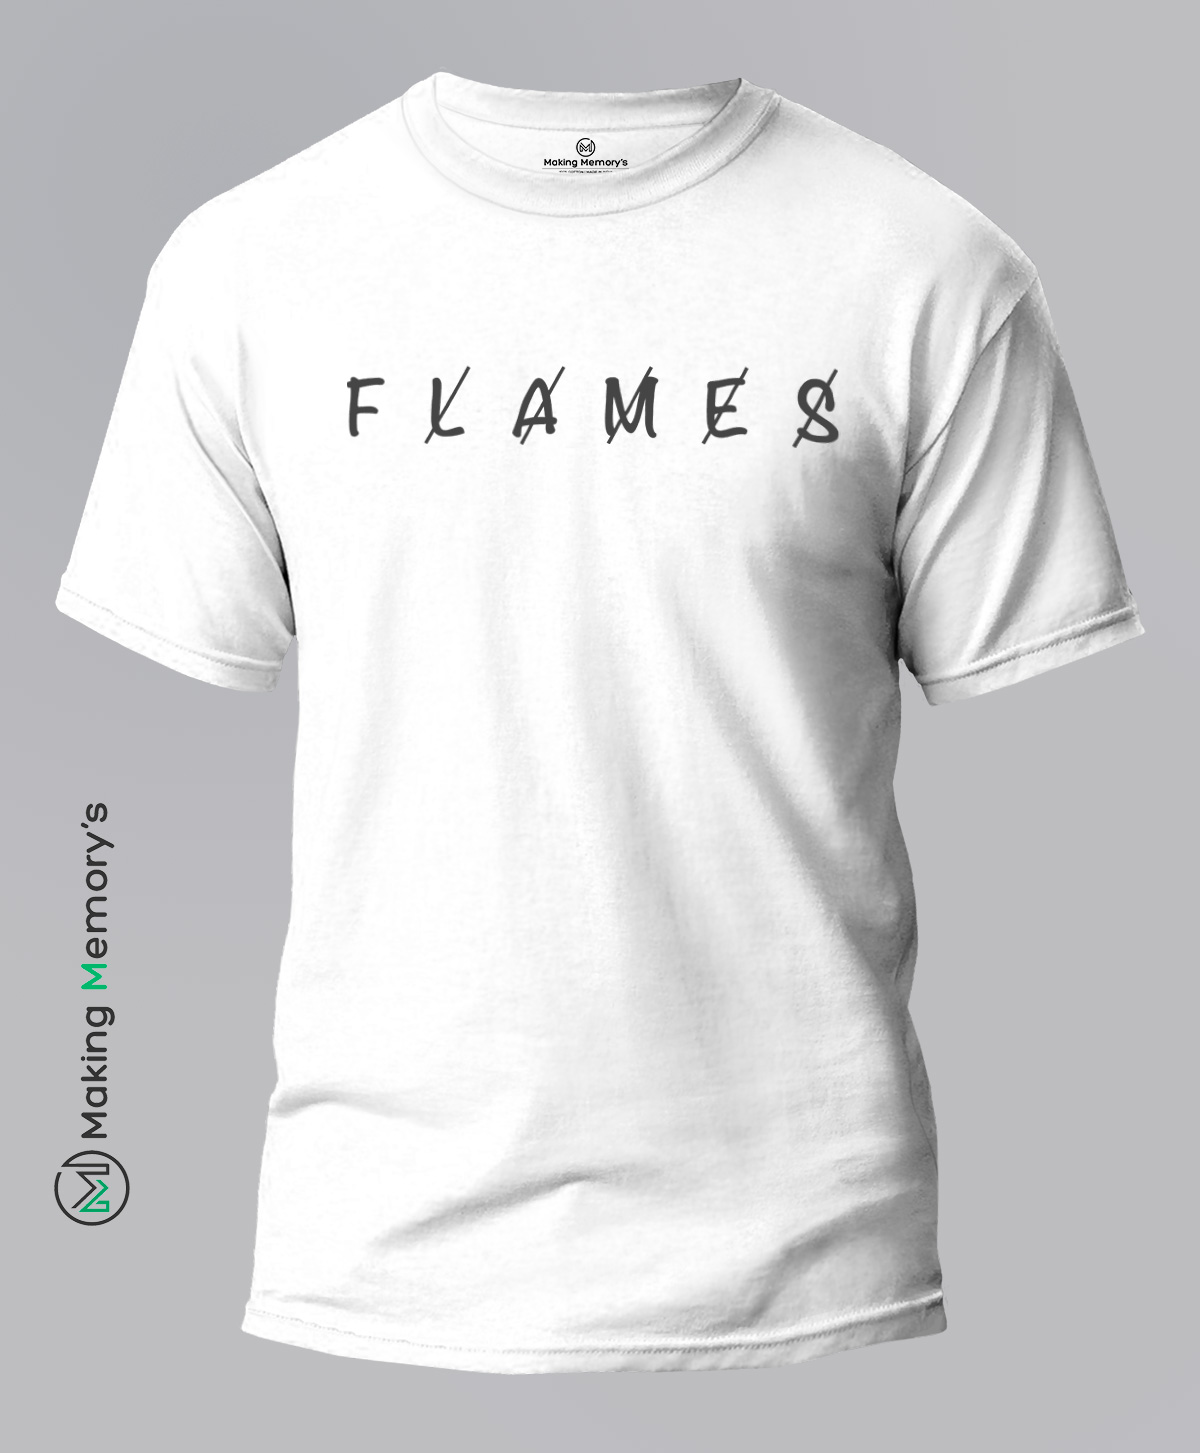 Flames-White-T-Shirt